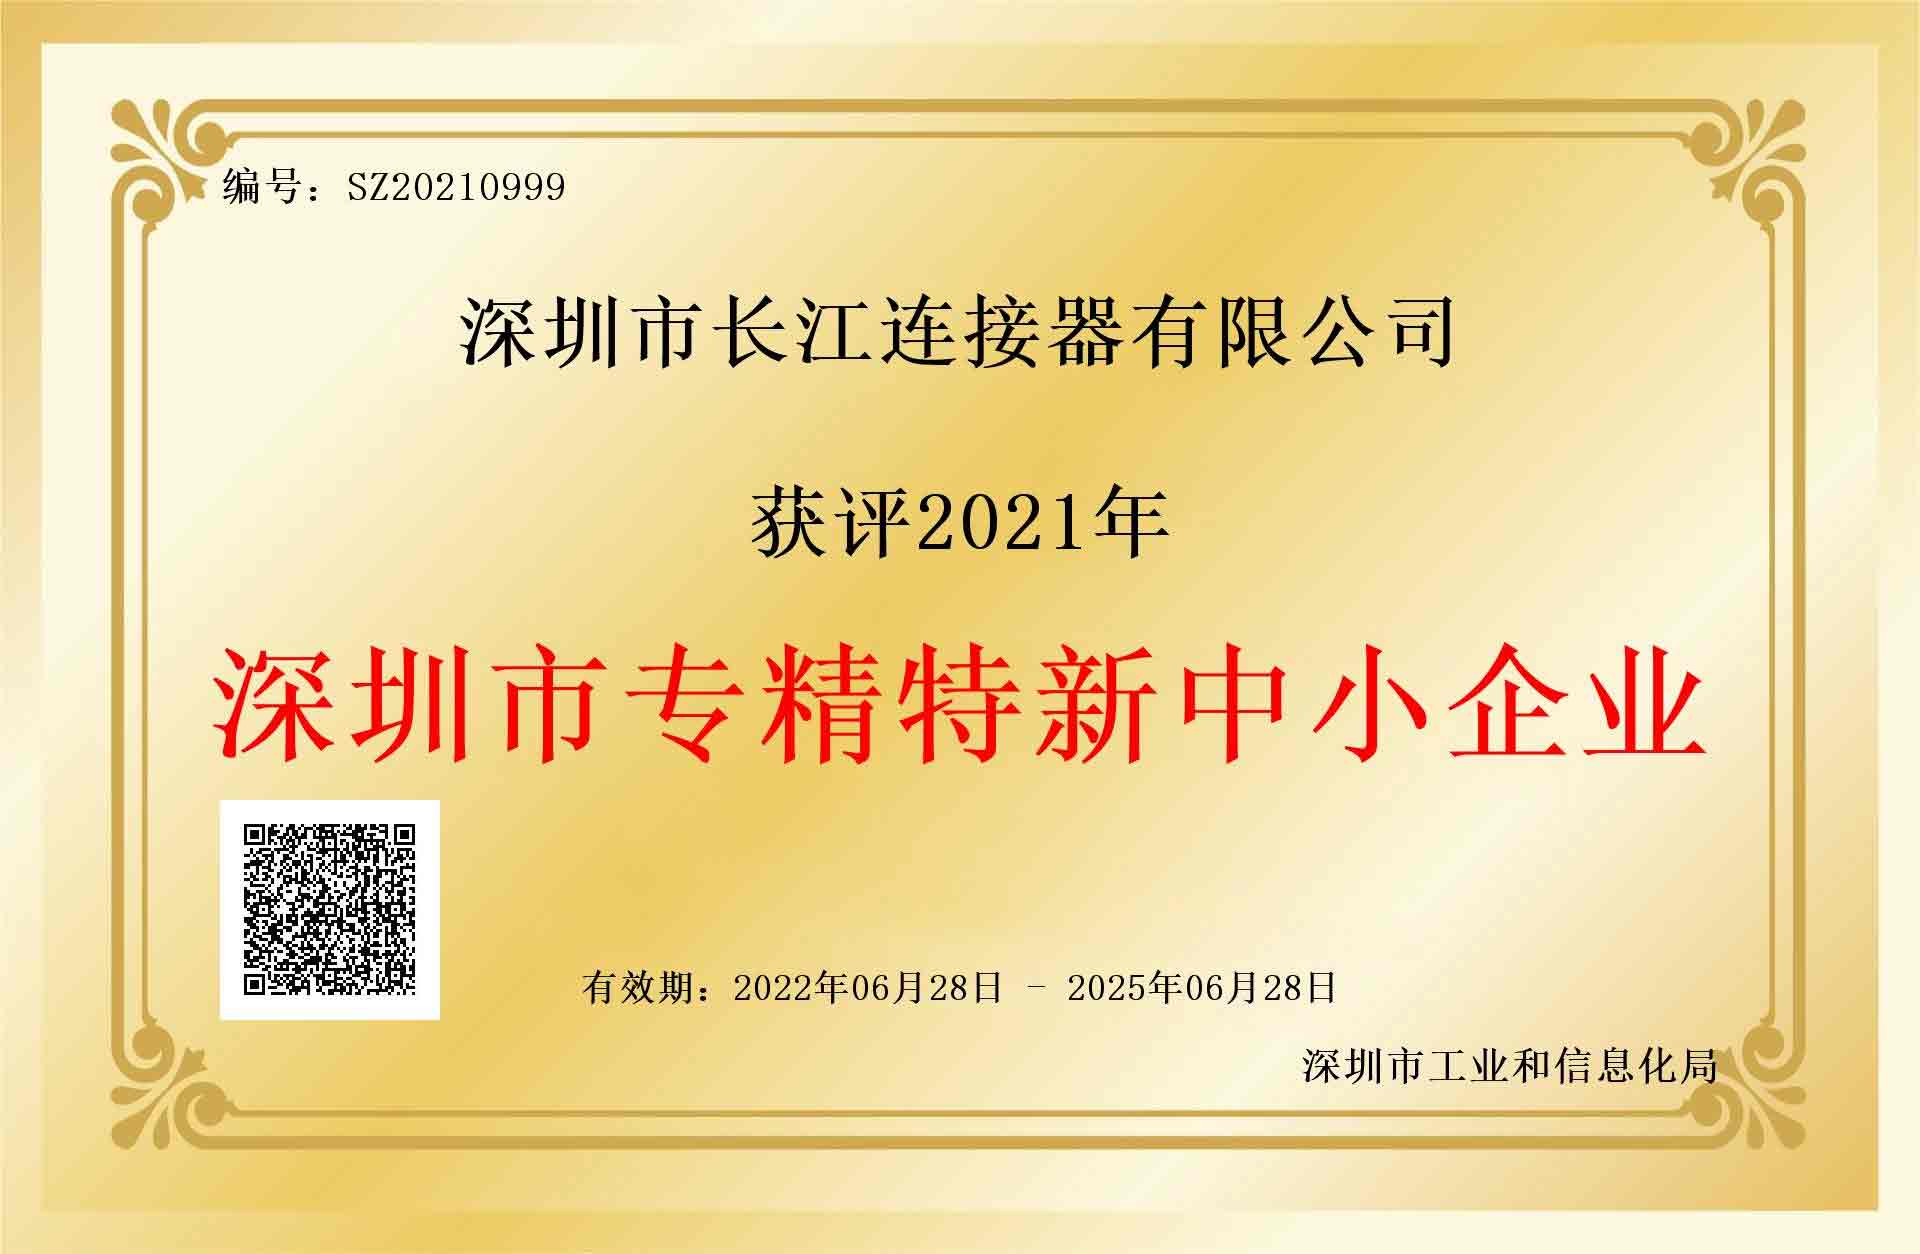 CJT長江コネクタが深セン市専精特新中小企業の称号を獲得したことを熱烈にお祝いします！